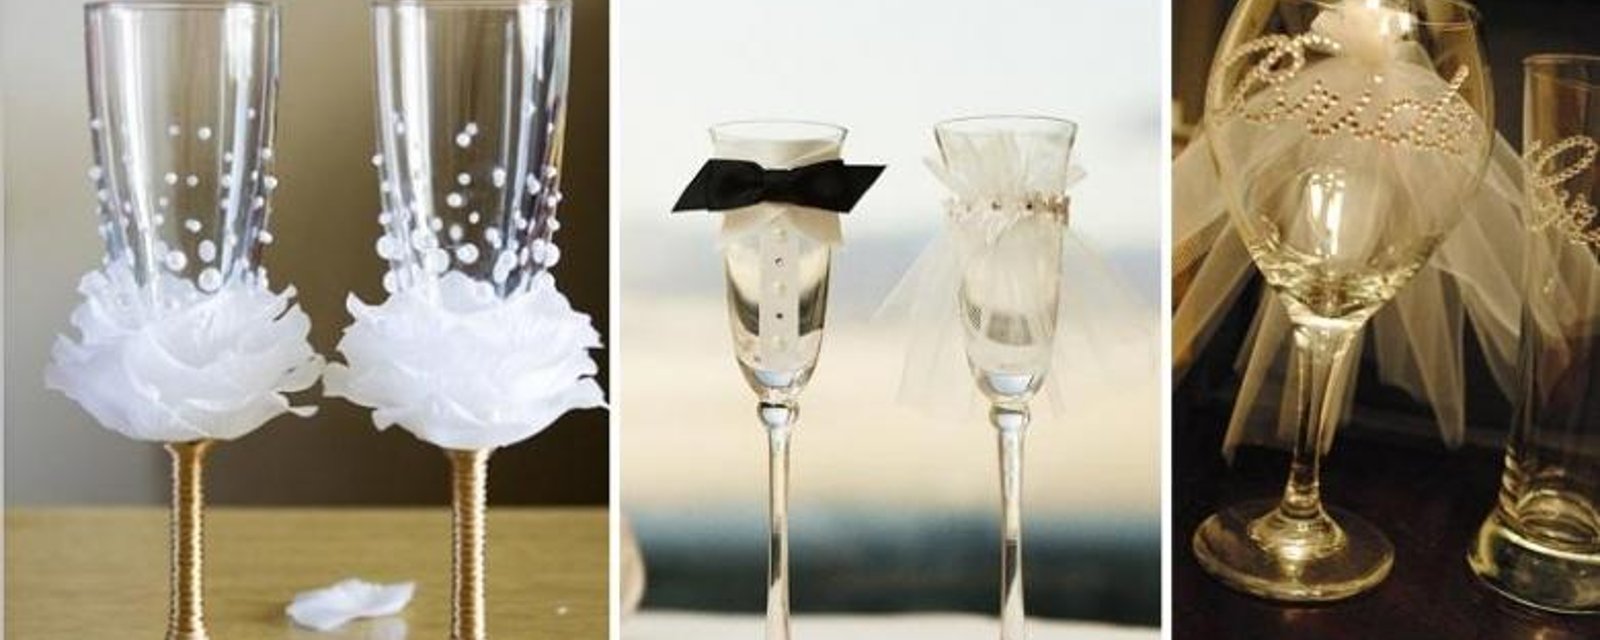 Comment décorer des flûtes à champagne! 3 idées mariage! 